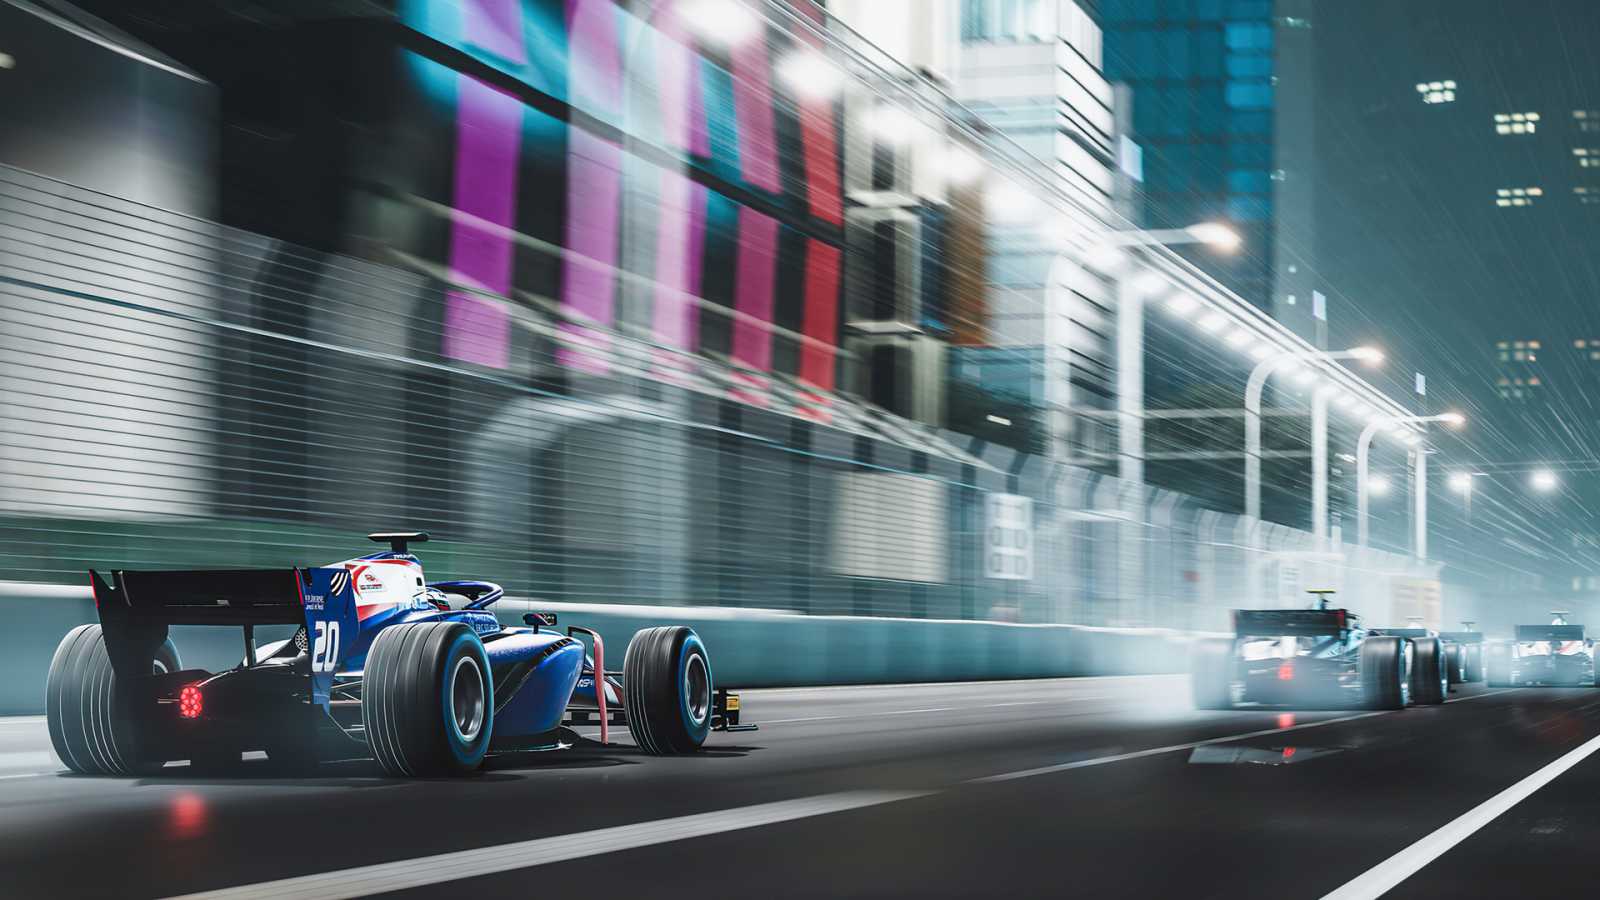 Letošní F1 osekává kontroverzní supercars, závody s nimi nebudou v multiplayeru, tvrdí Tom Henderson